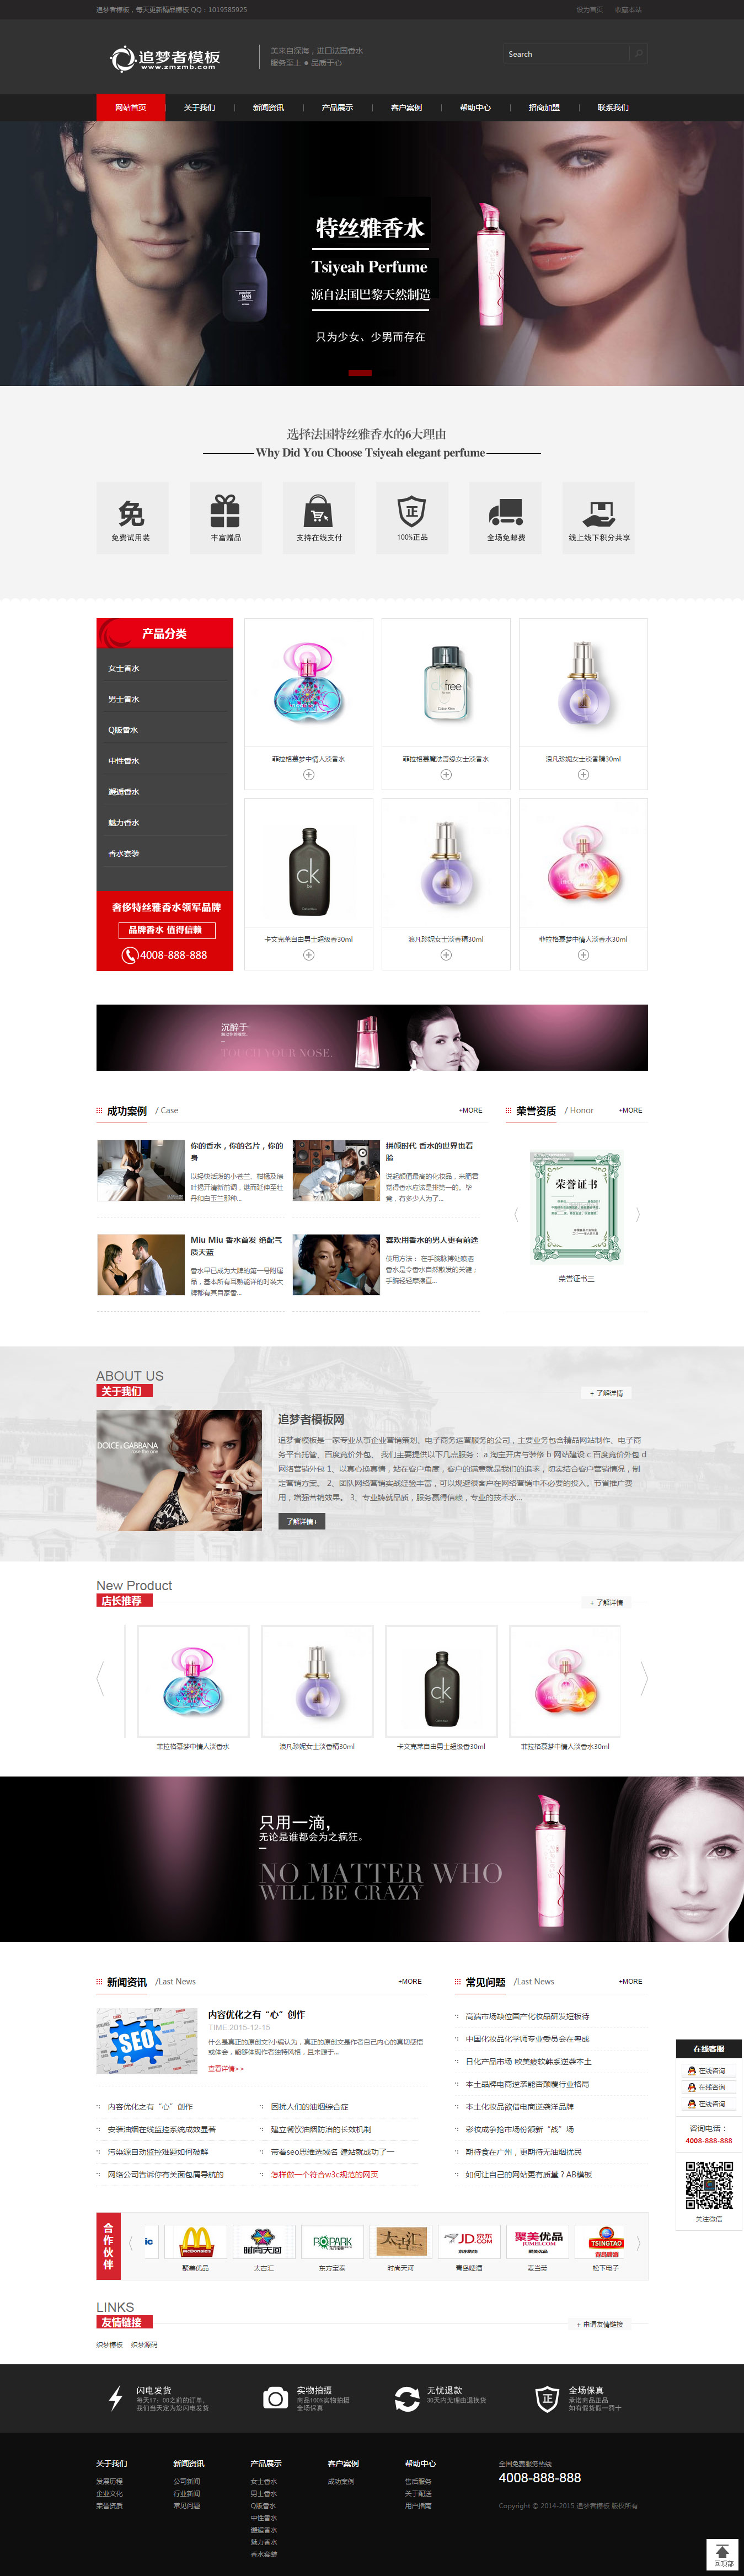 黑色化妆品产品展示类企业网站织梦模板